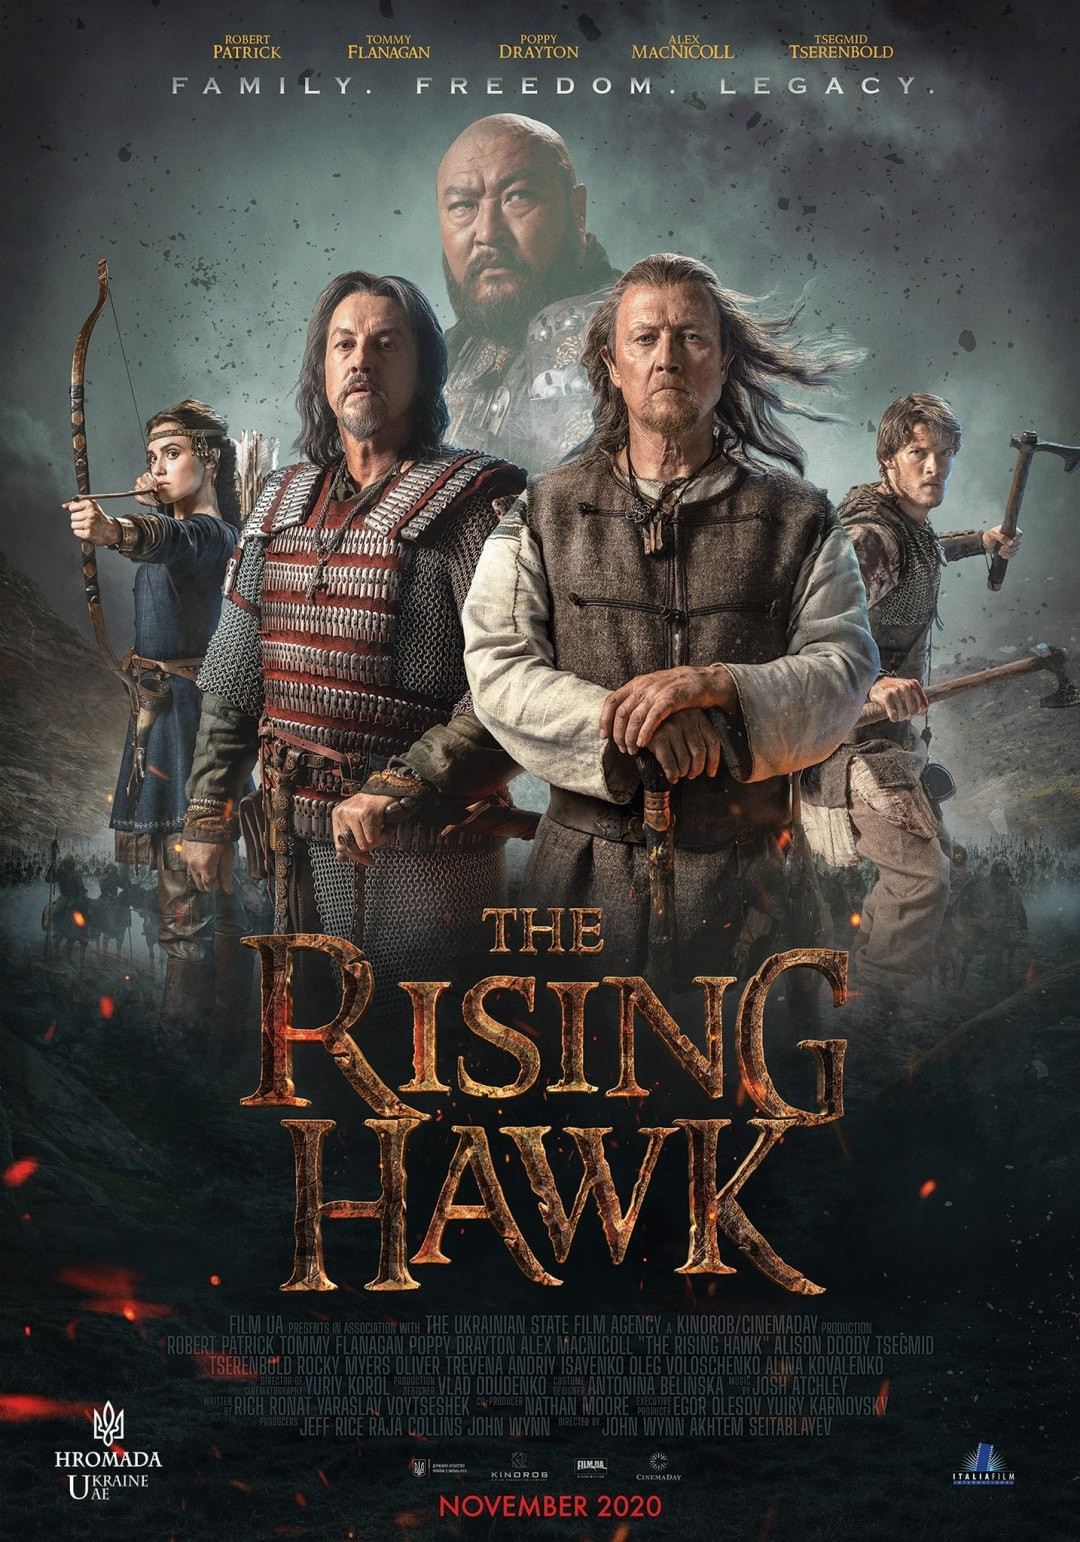 THE RISING HAWK